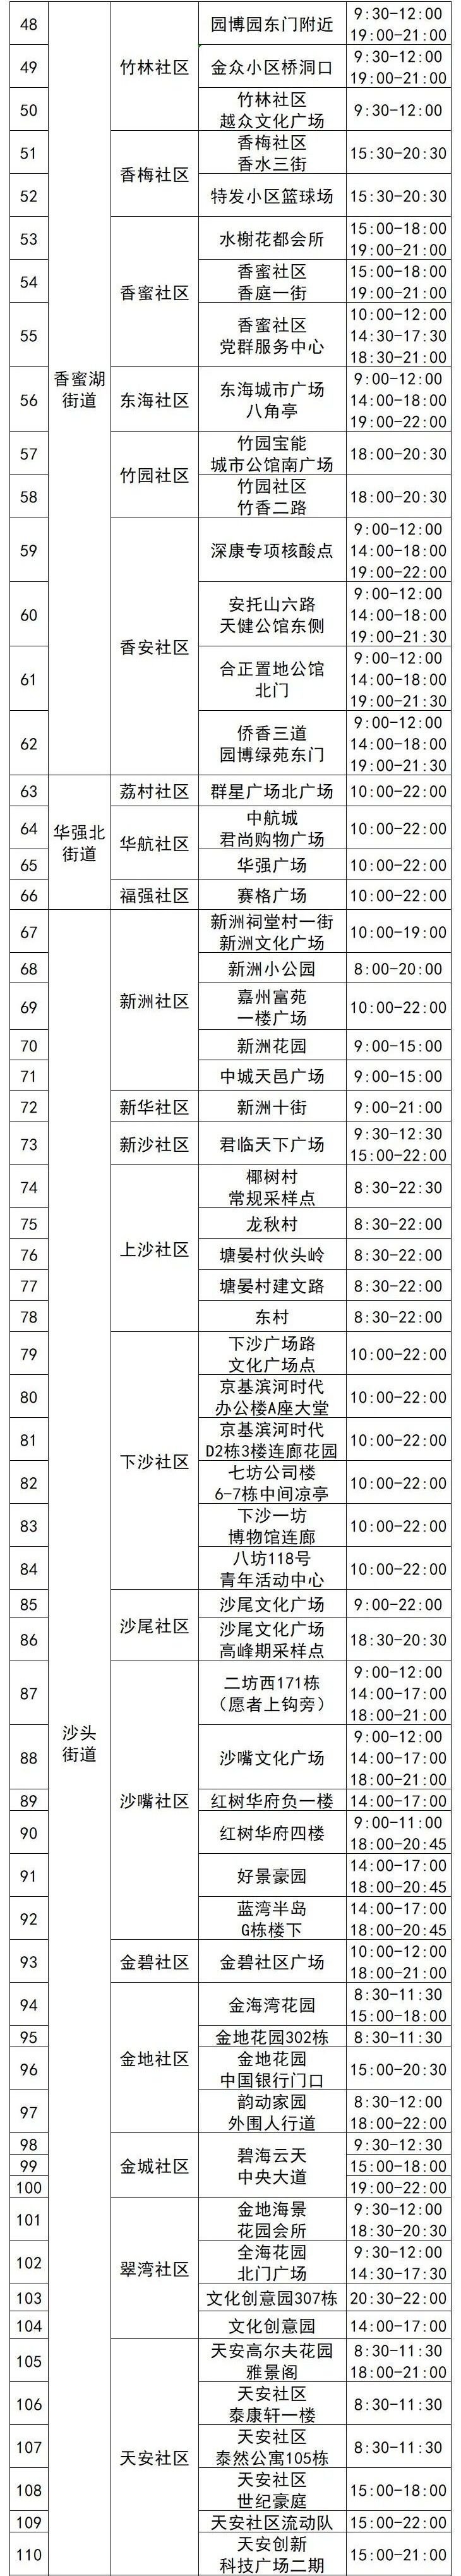 福田区4月15日110个核酸采样点名单